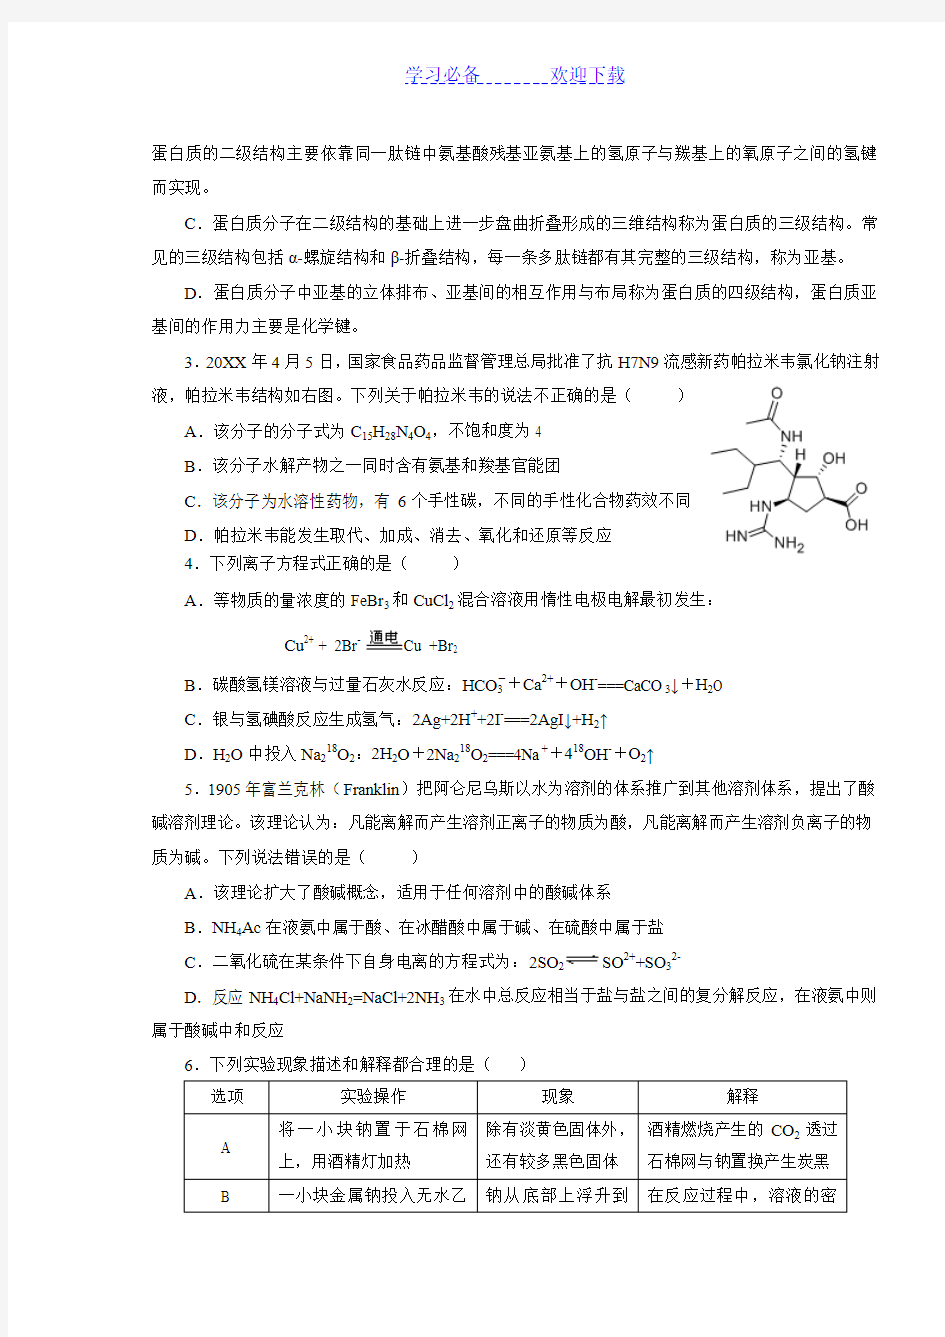 浙江省高中学生化学竞赛预赛试题题目